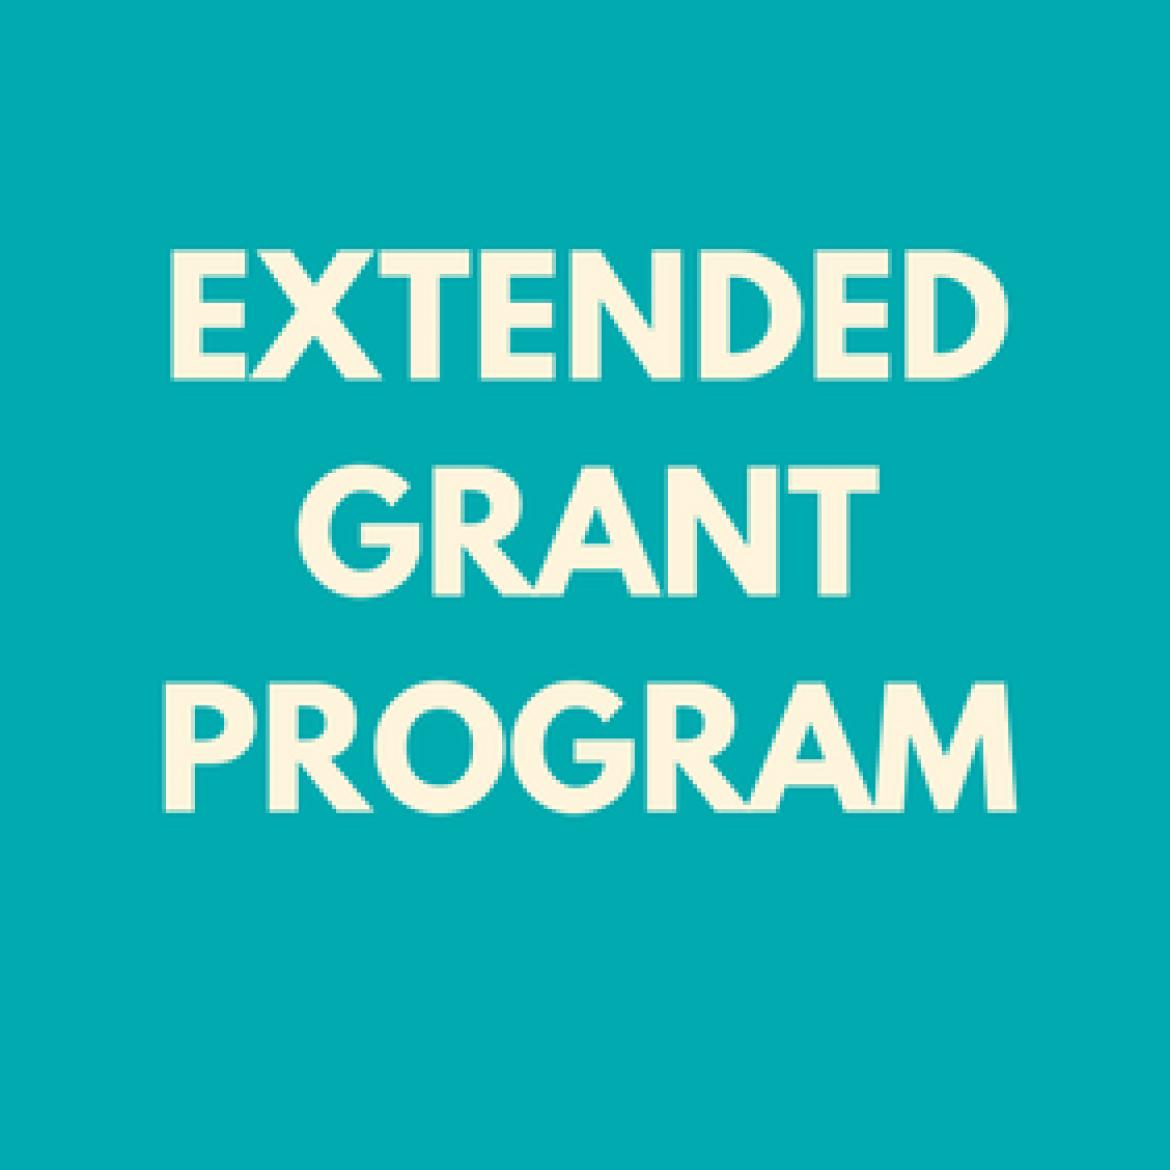 Extended grants program